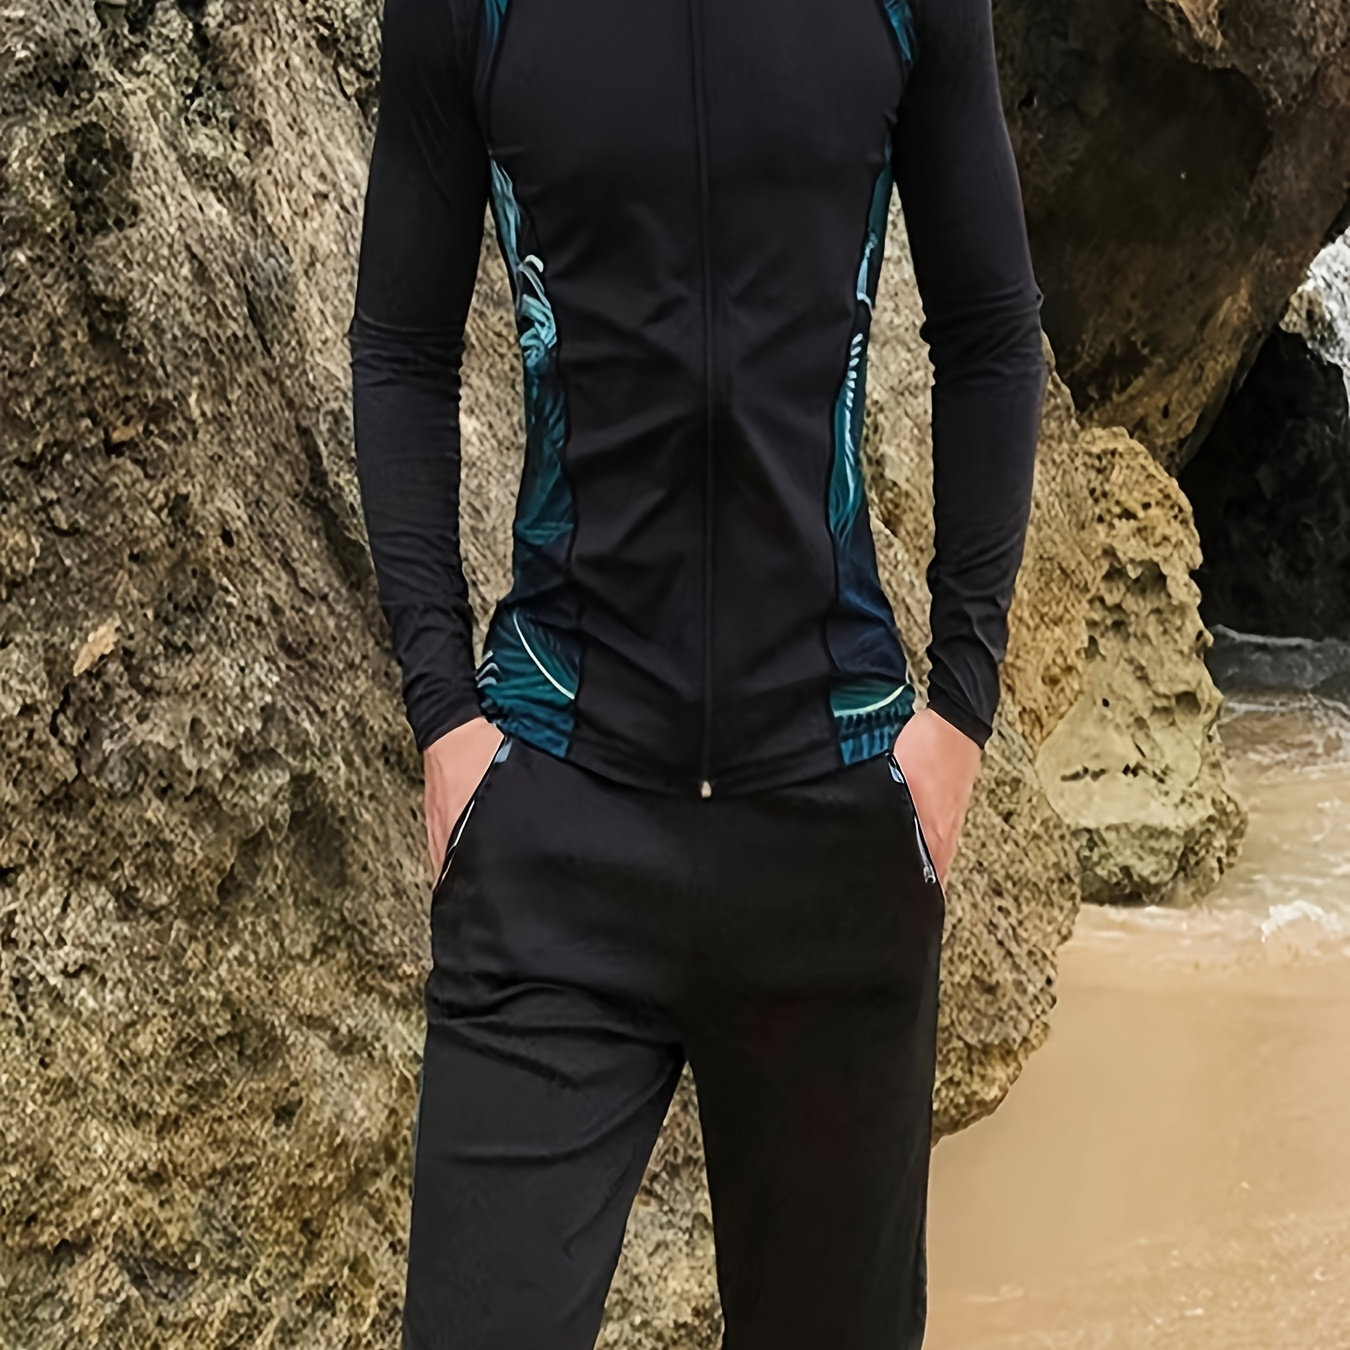 

3-piece Men's Water Sports Wet Suit Set, Men's Color Block Long Sleeve Slim Fit Zipper Top & Pocket Shorts & Leggings